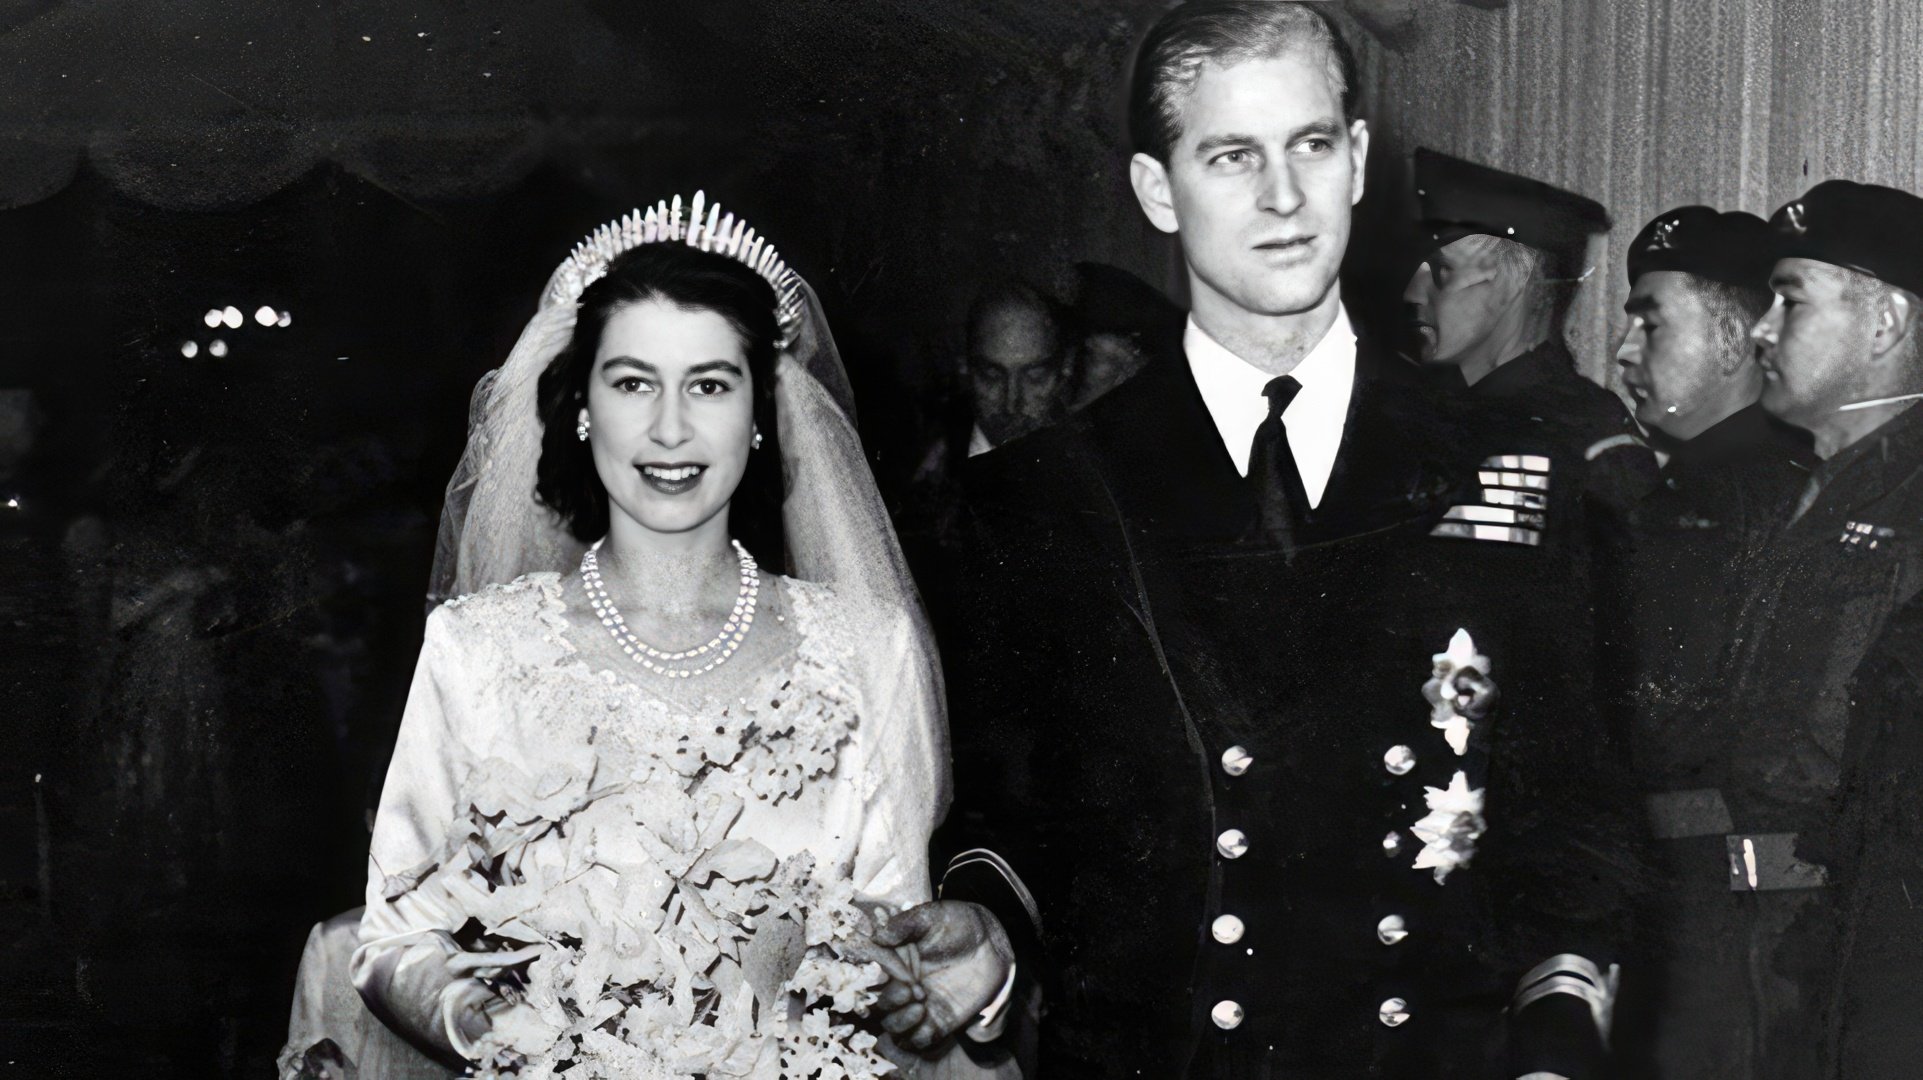 The Wedding of Elizabeth II and Prince Philip